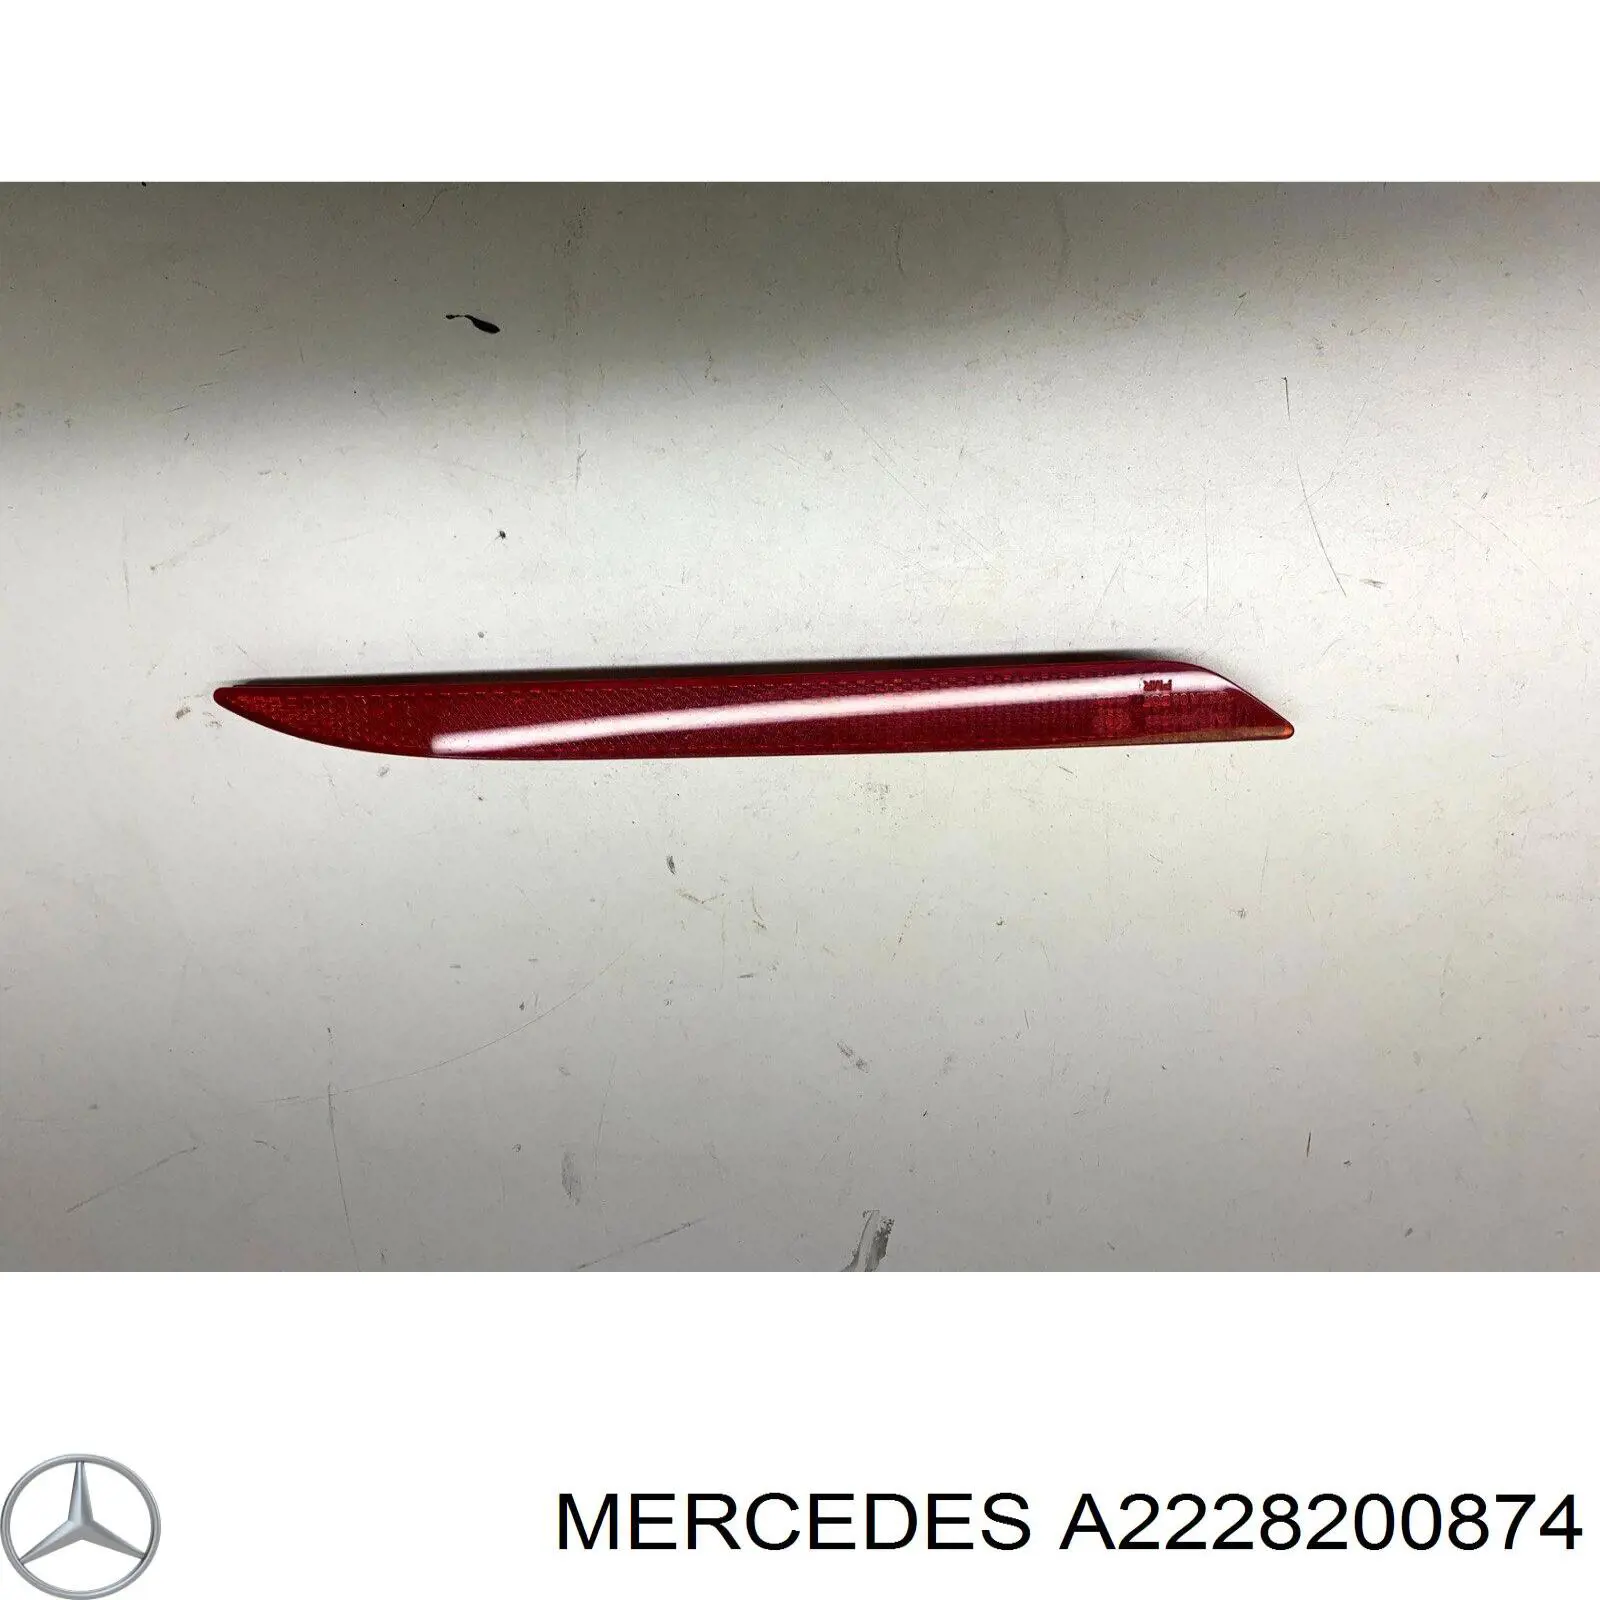 A2228200874 Mercedes reflector, parachoques trasero, derecho